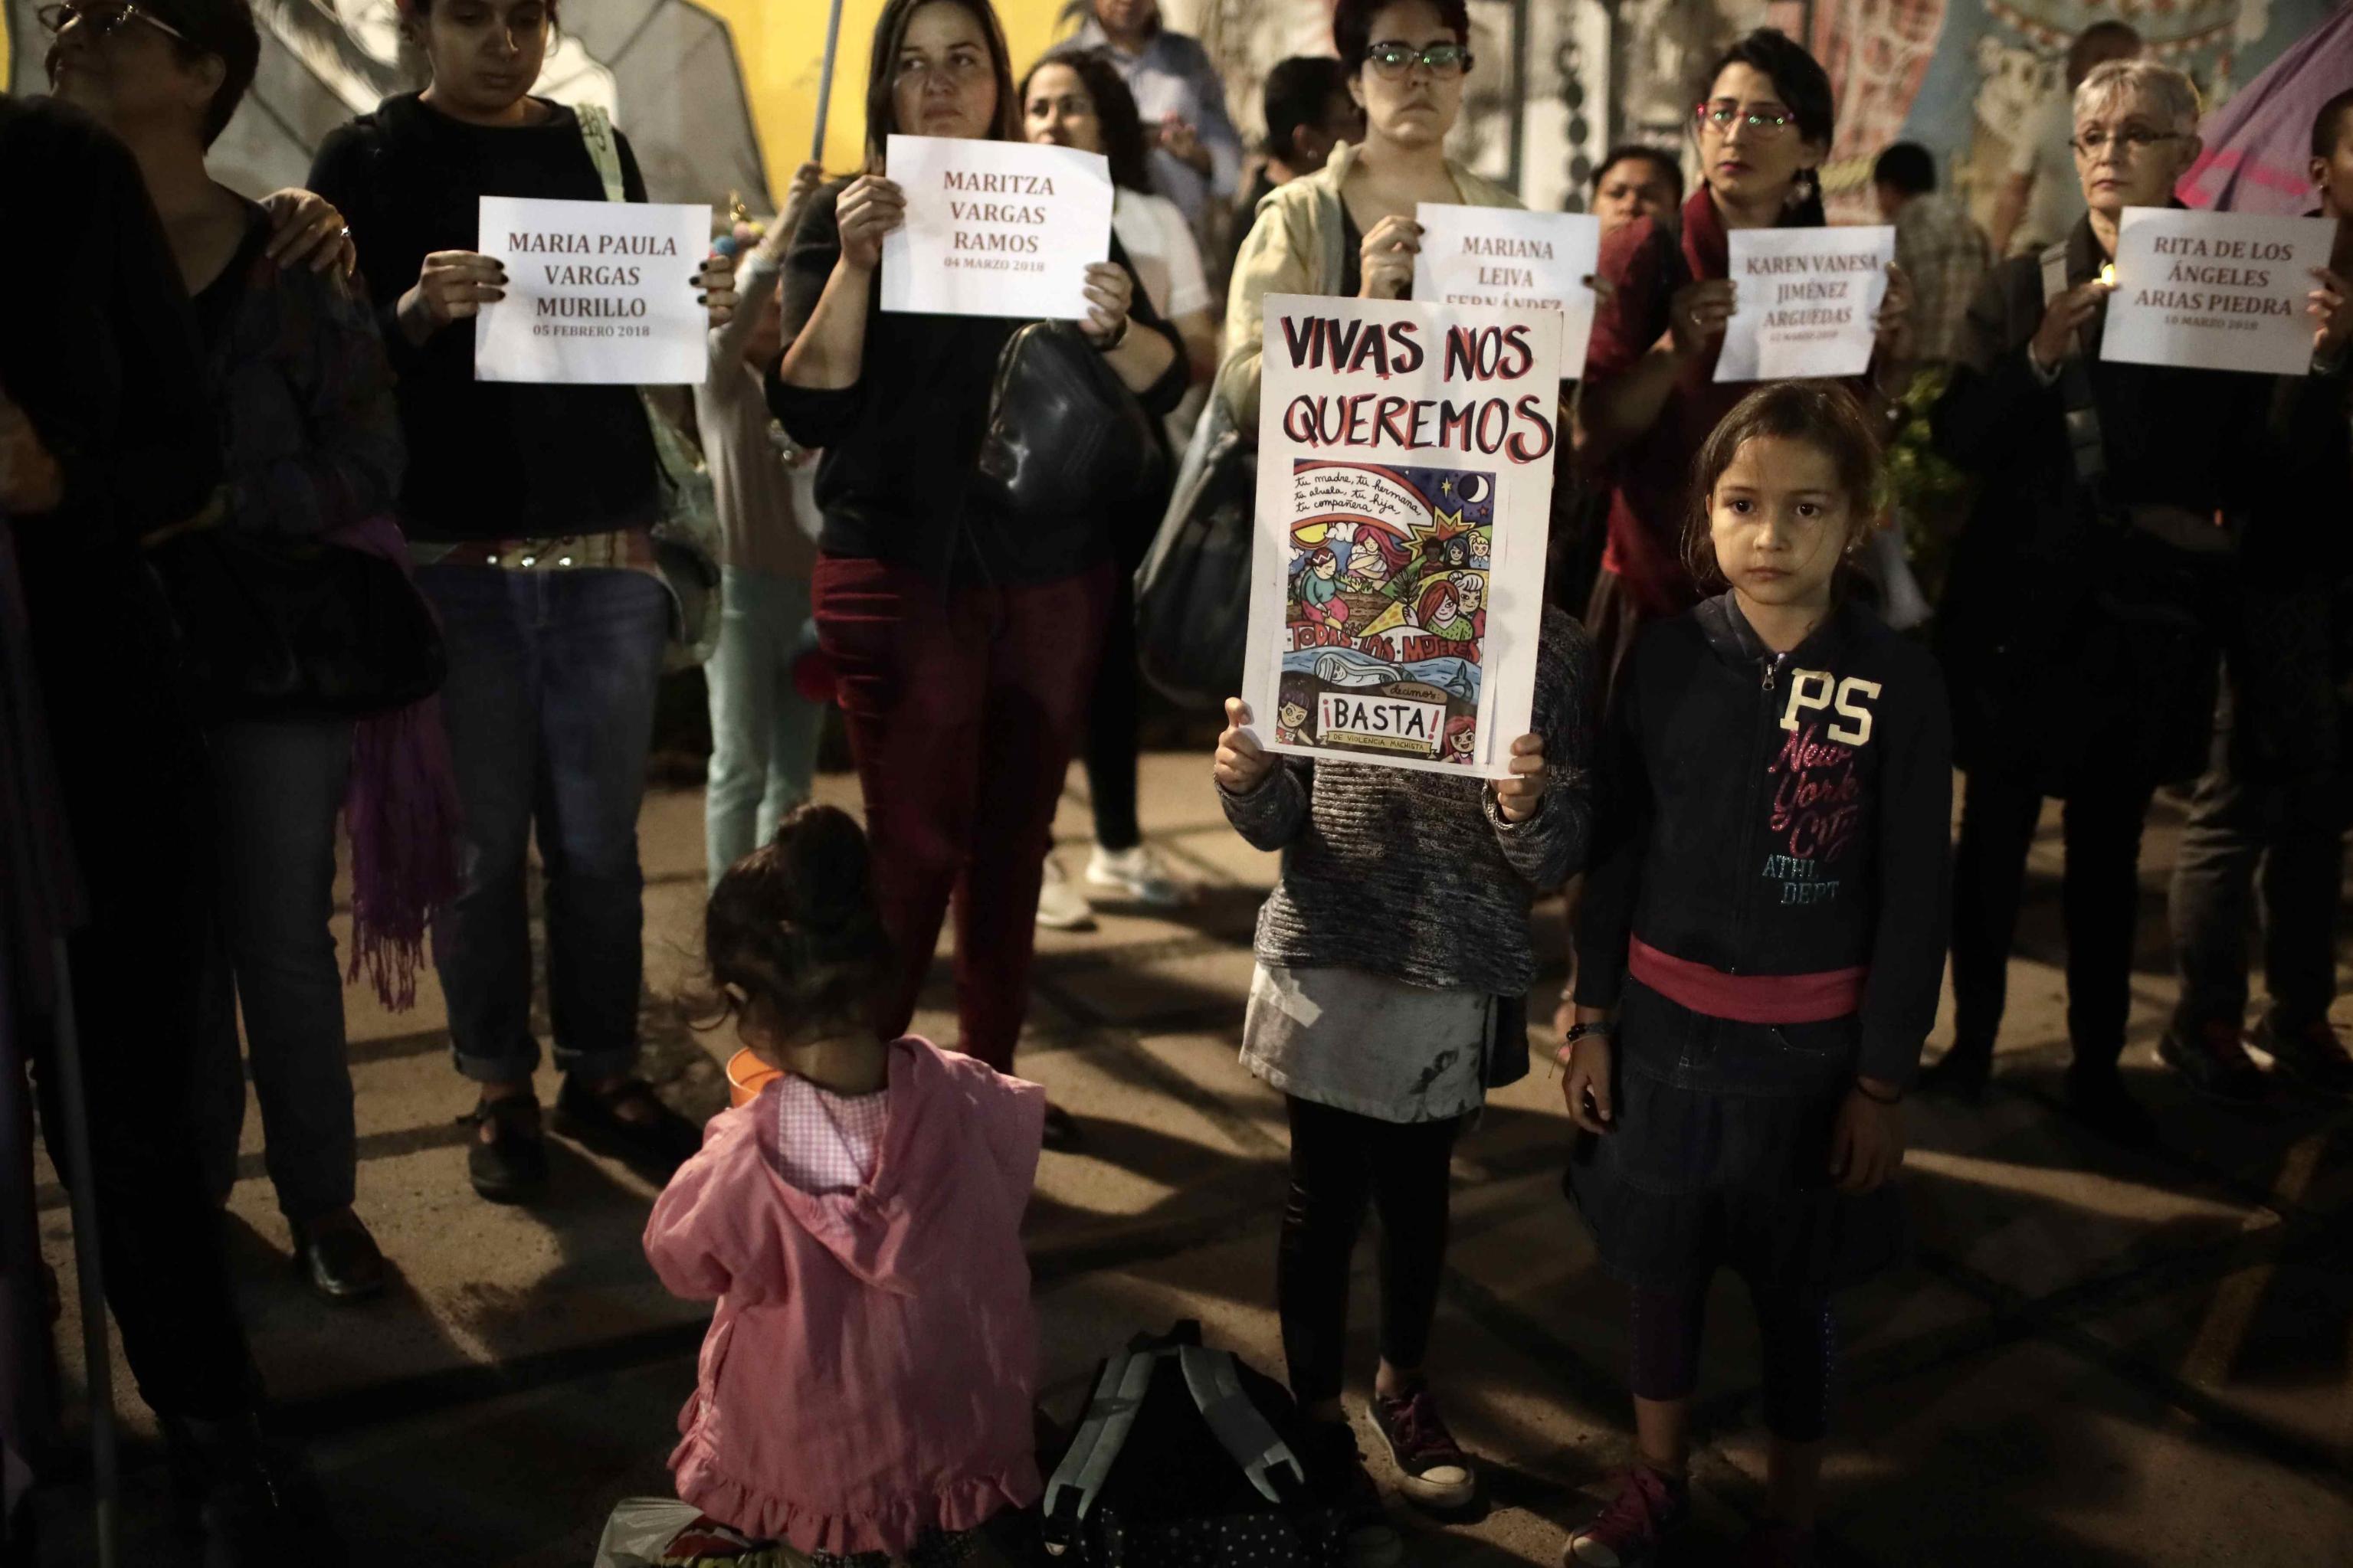 Le donne in protesta in Costa Rica